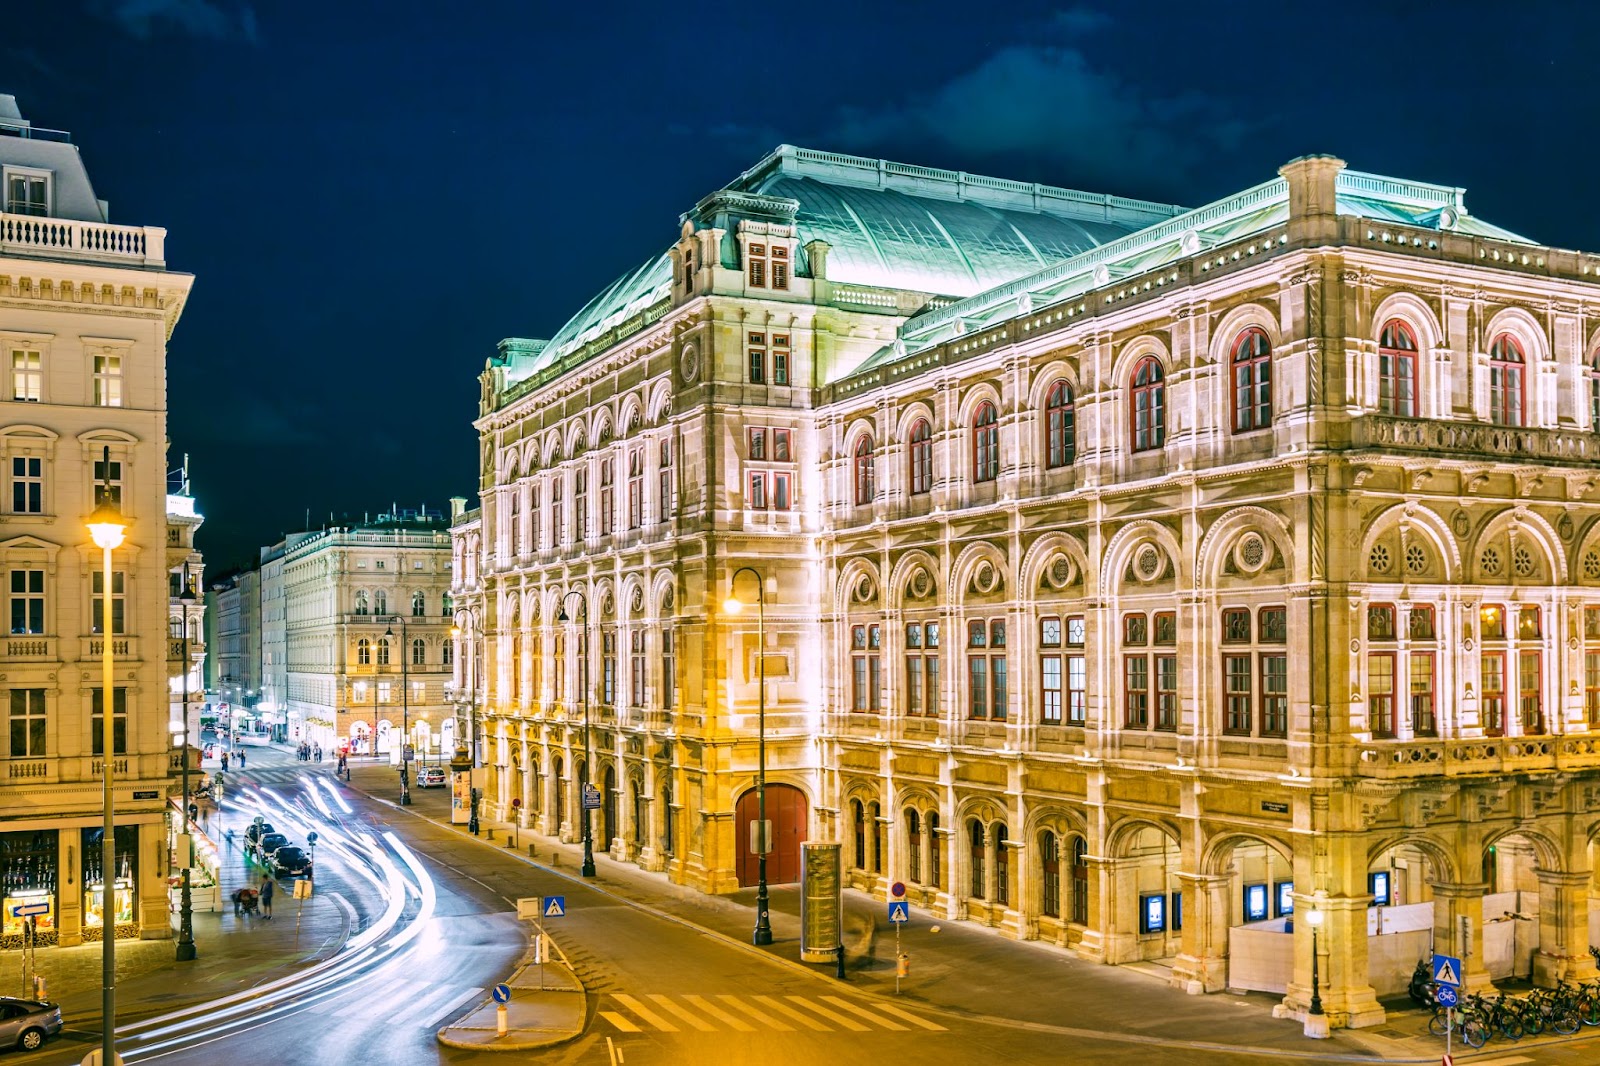 5. Opera de Stat din Viena